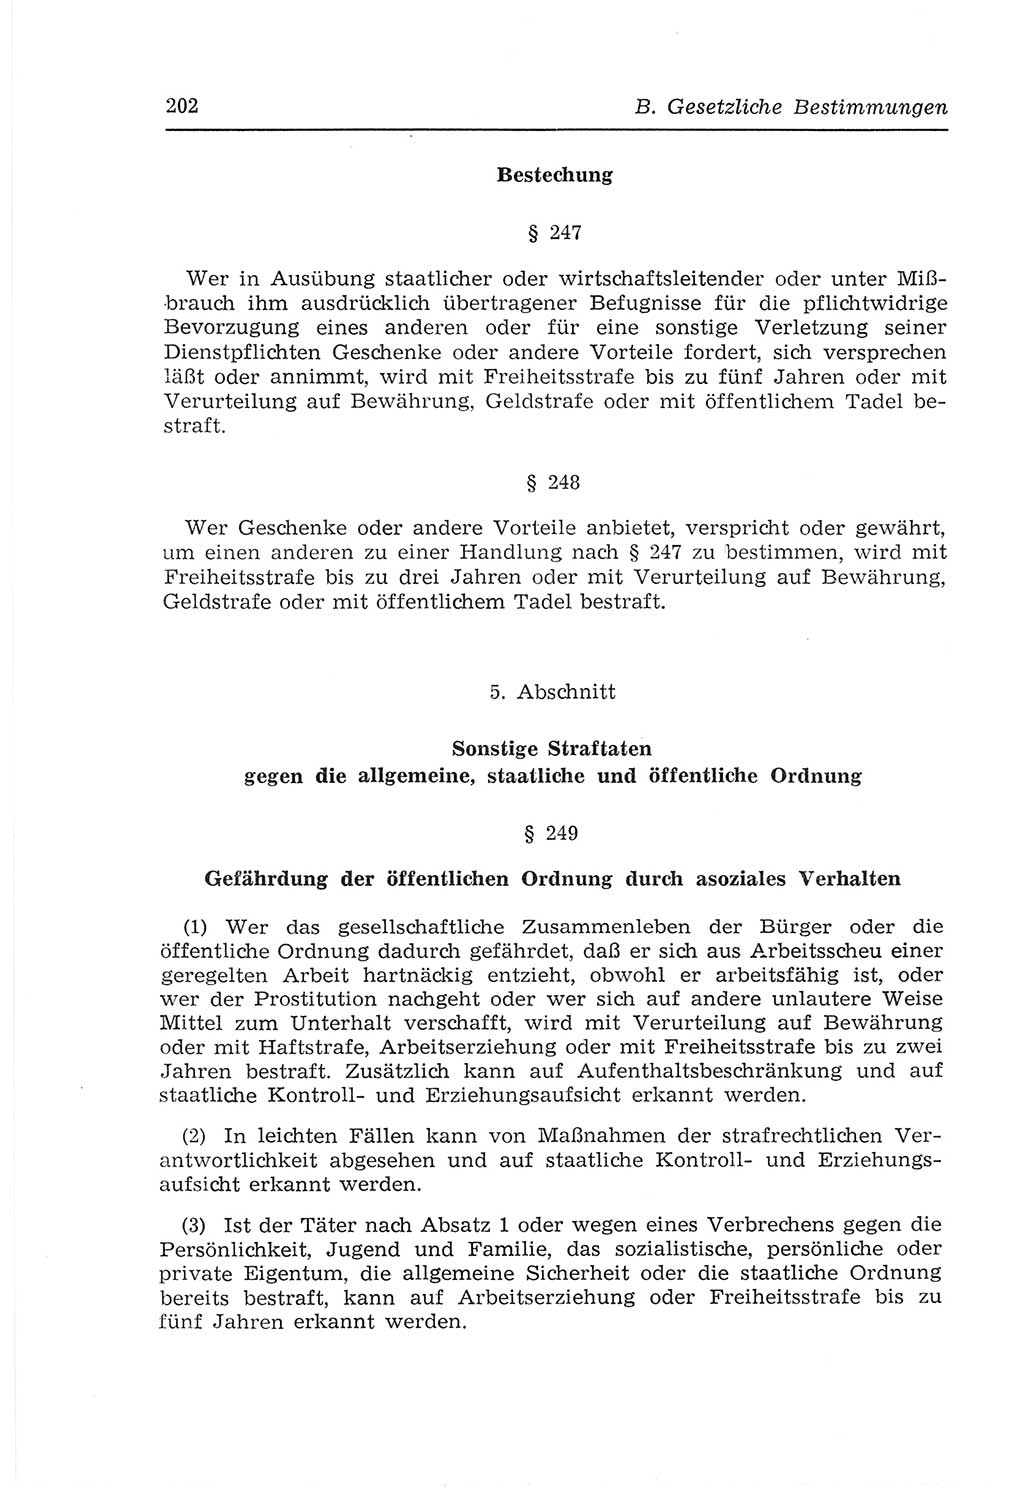 Strafvollzugs- und Wiedereingliederungsgesetz (SVWG) der Deutschen Demokratischen Republik (DDR) 1968, Seite 202 (SVWG DDR 1968, S. 202)